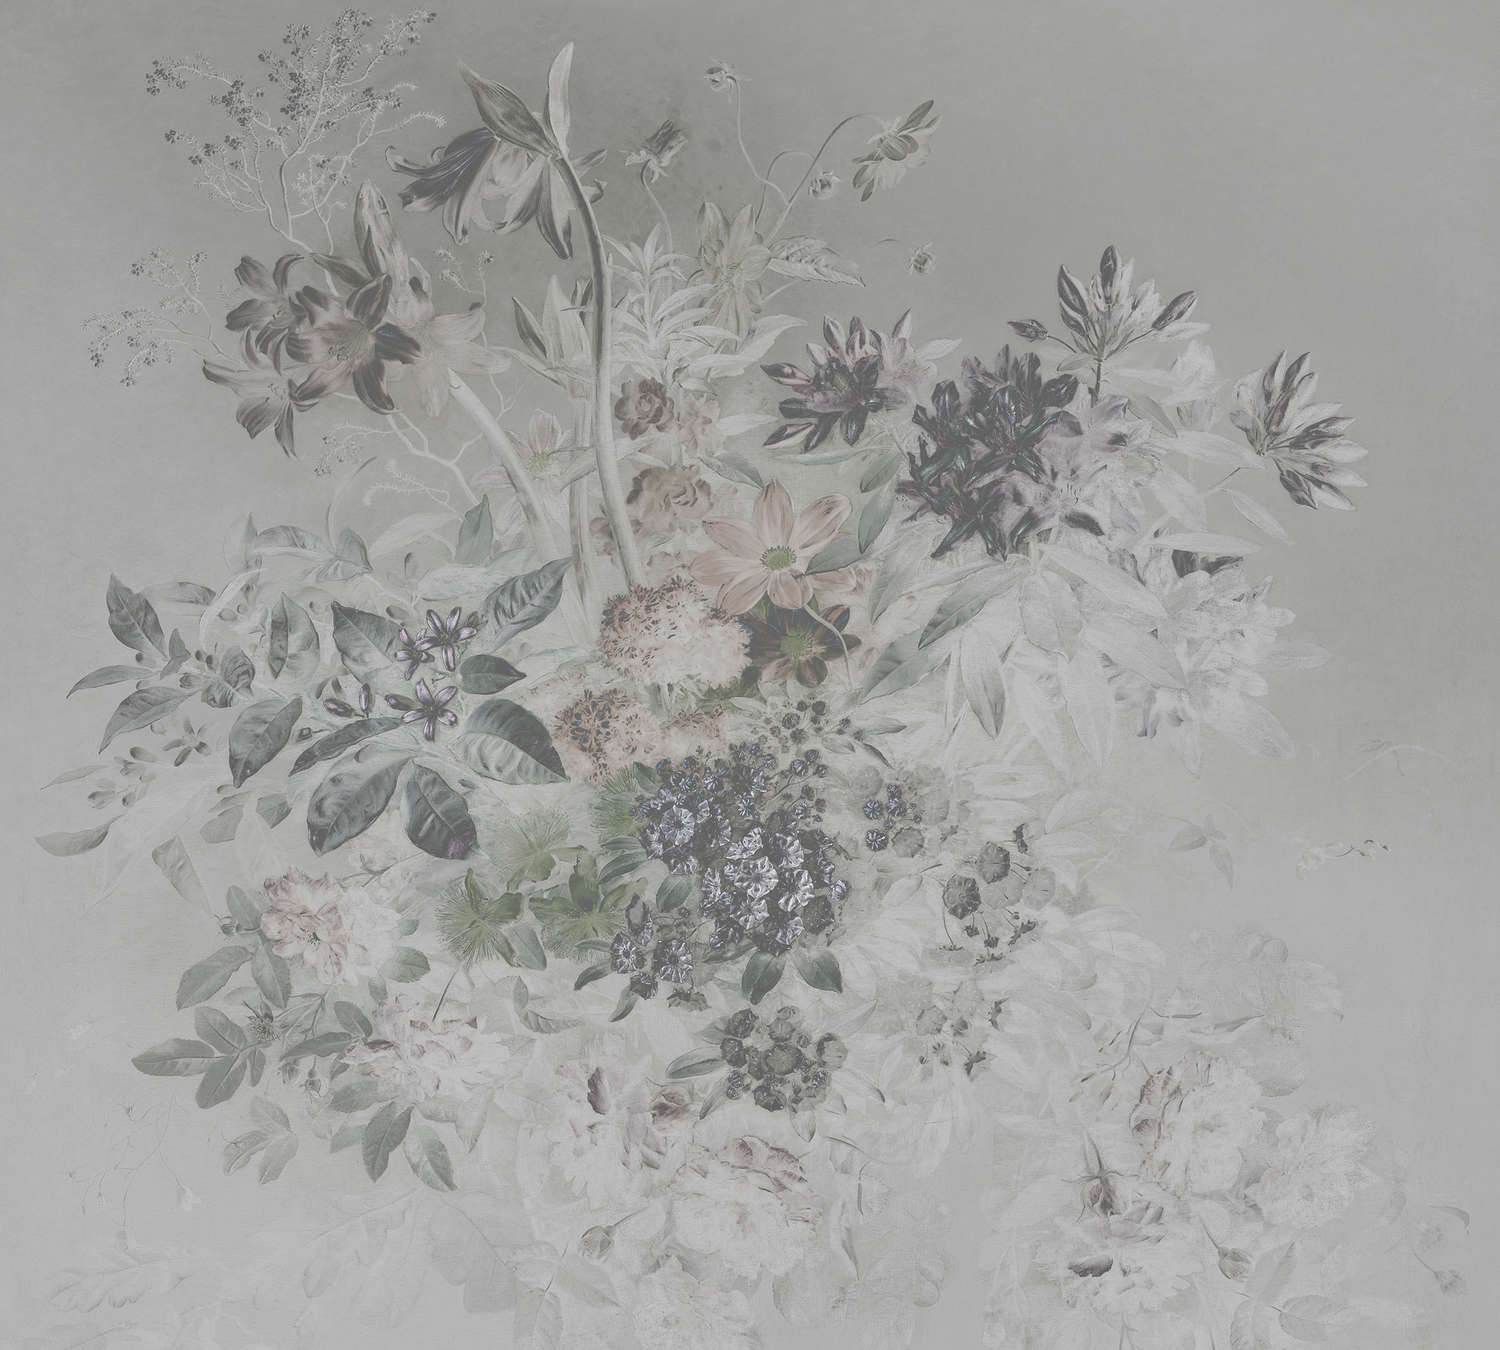             Papier peint romantique design floral - gris, blanc
        